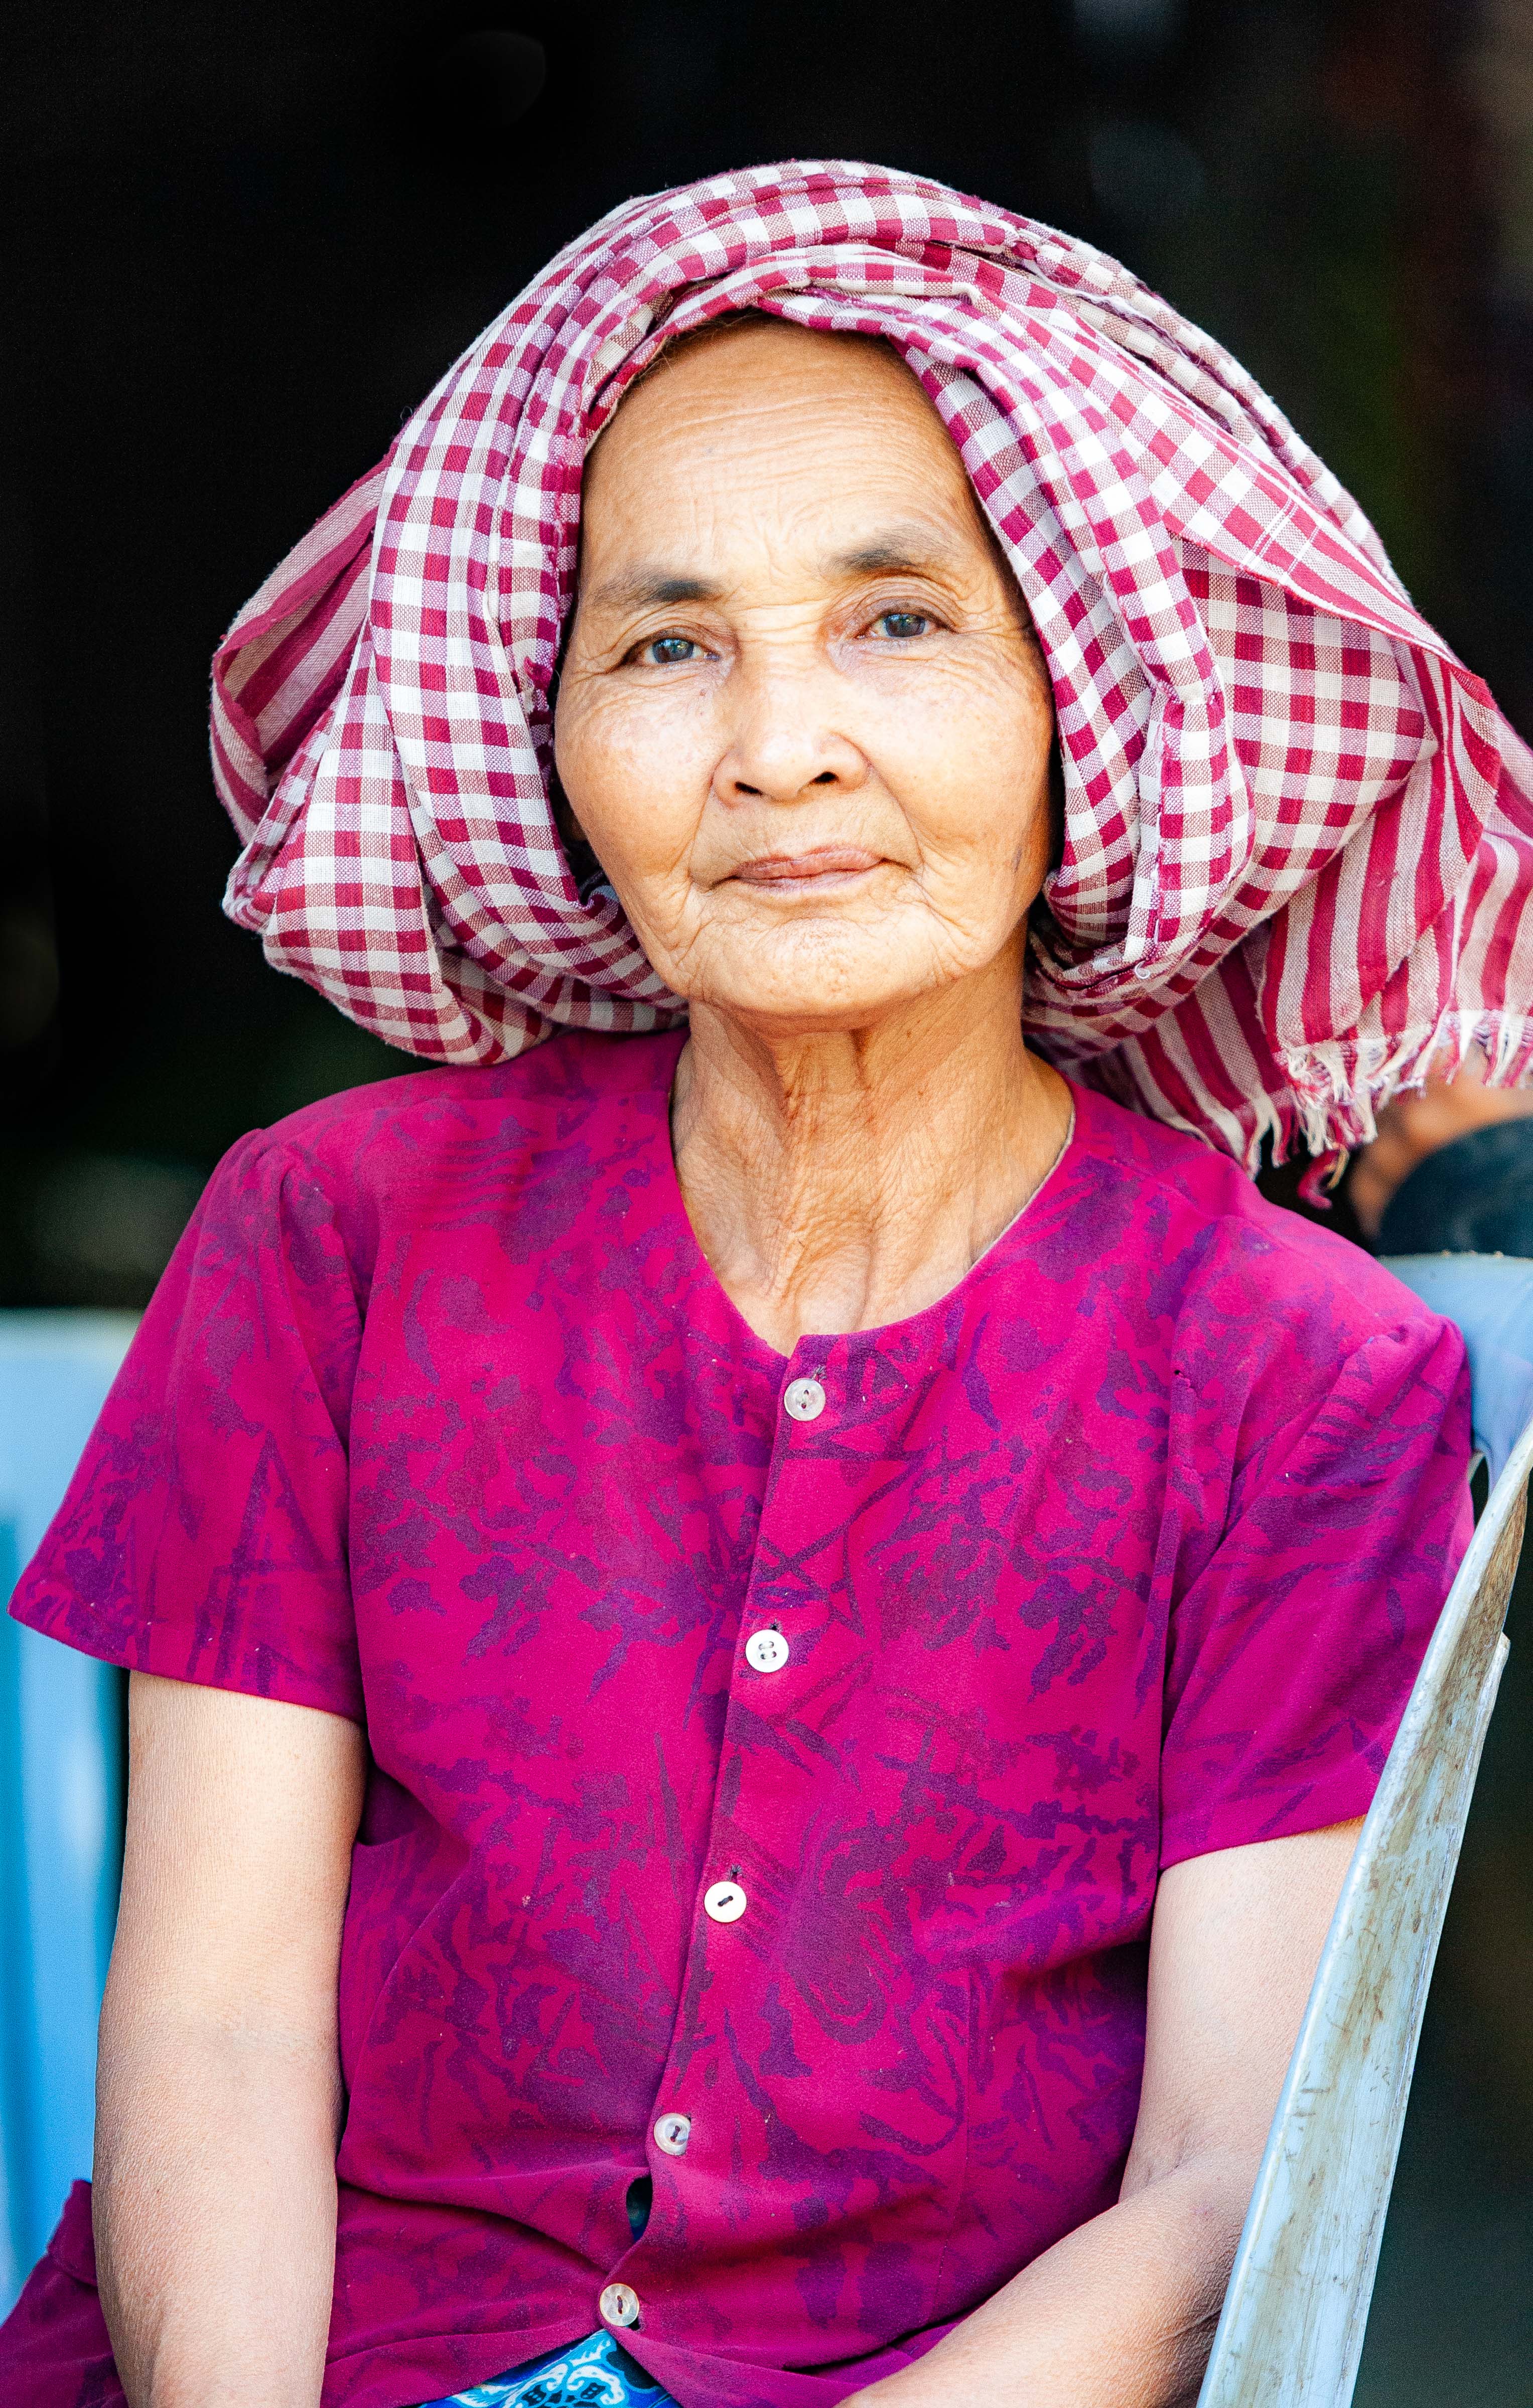 Cambodia, Krong Preah Sihanouk Prov, Village Woman, 2010, IMG 4992